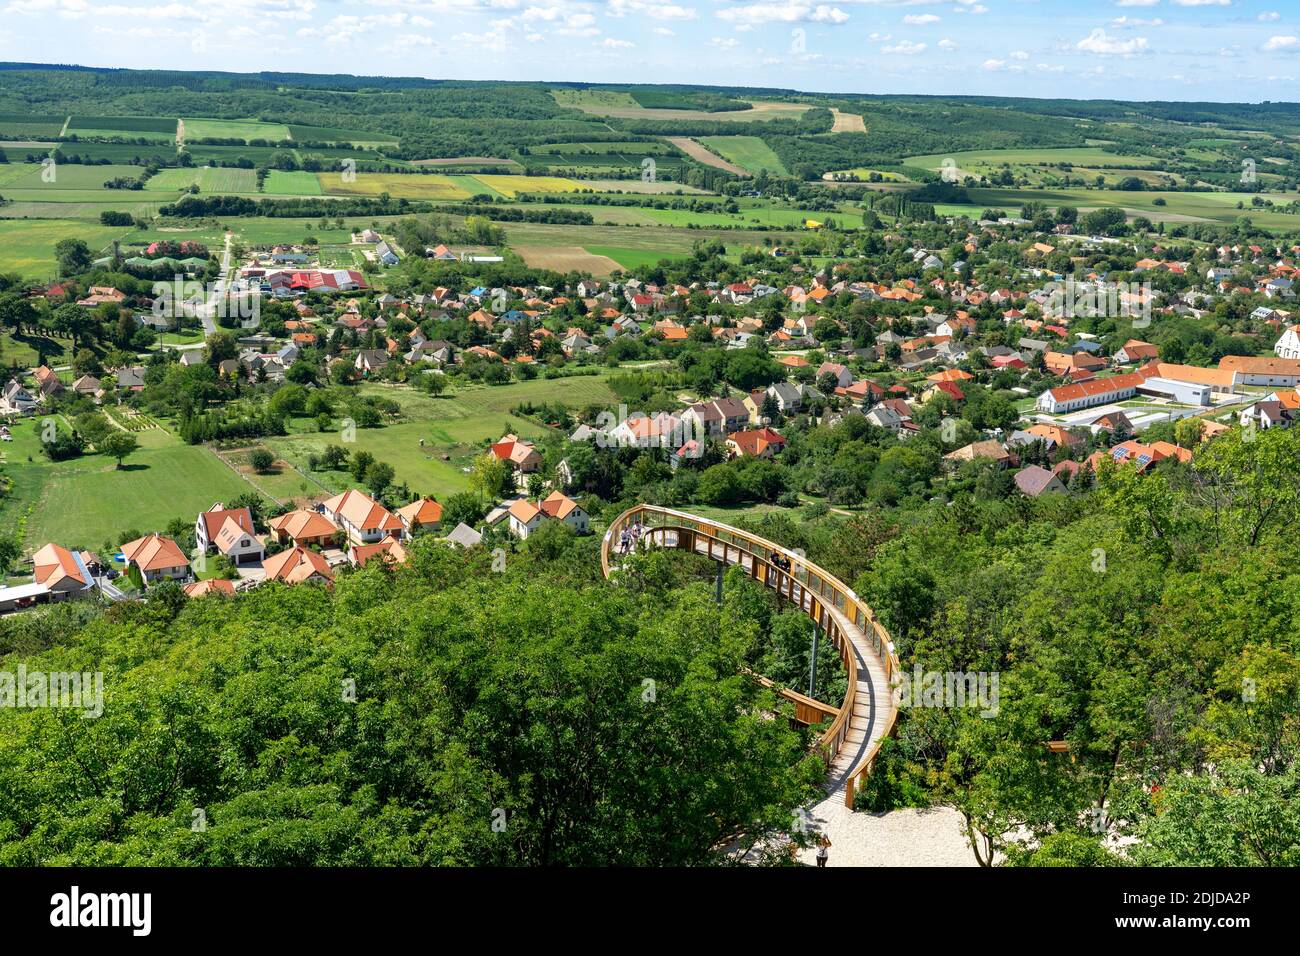 09.11.2020 - Pannonhalma, Ungheria: Avventura sui boschi e la città di legno corona percorso sentiero percorso su Pannonhalma Foto Stock